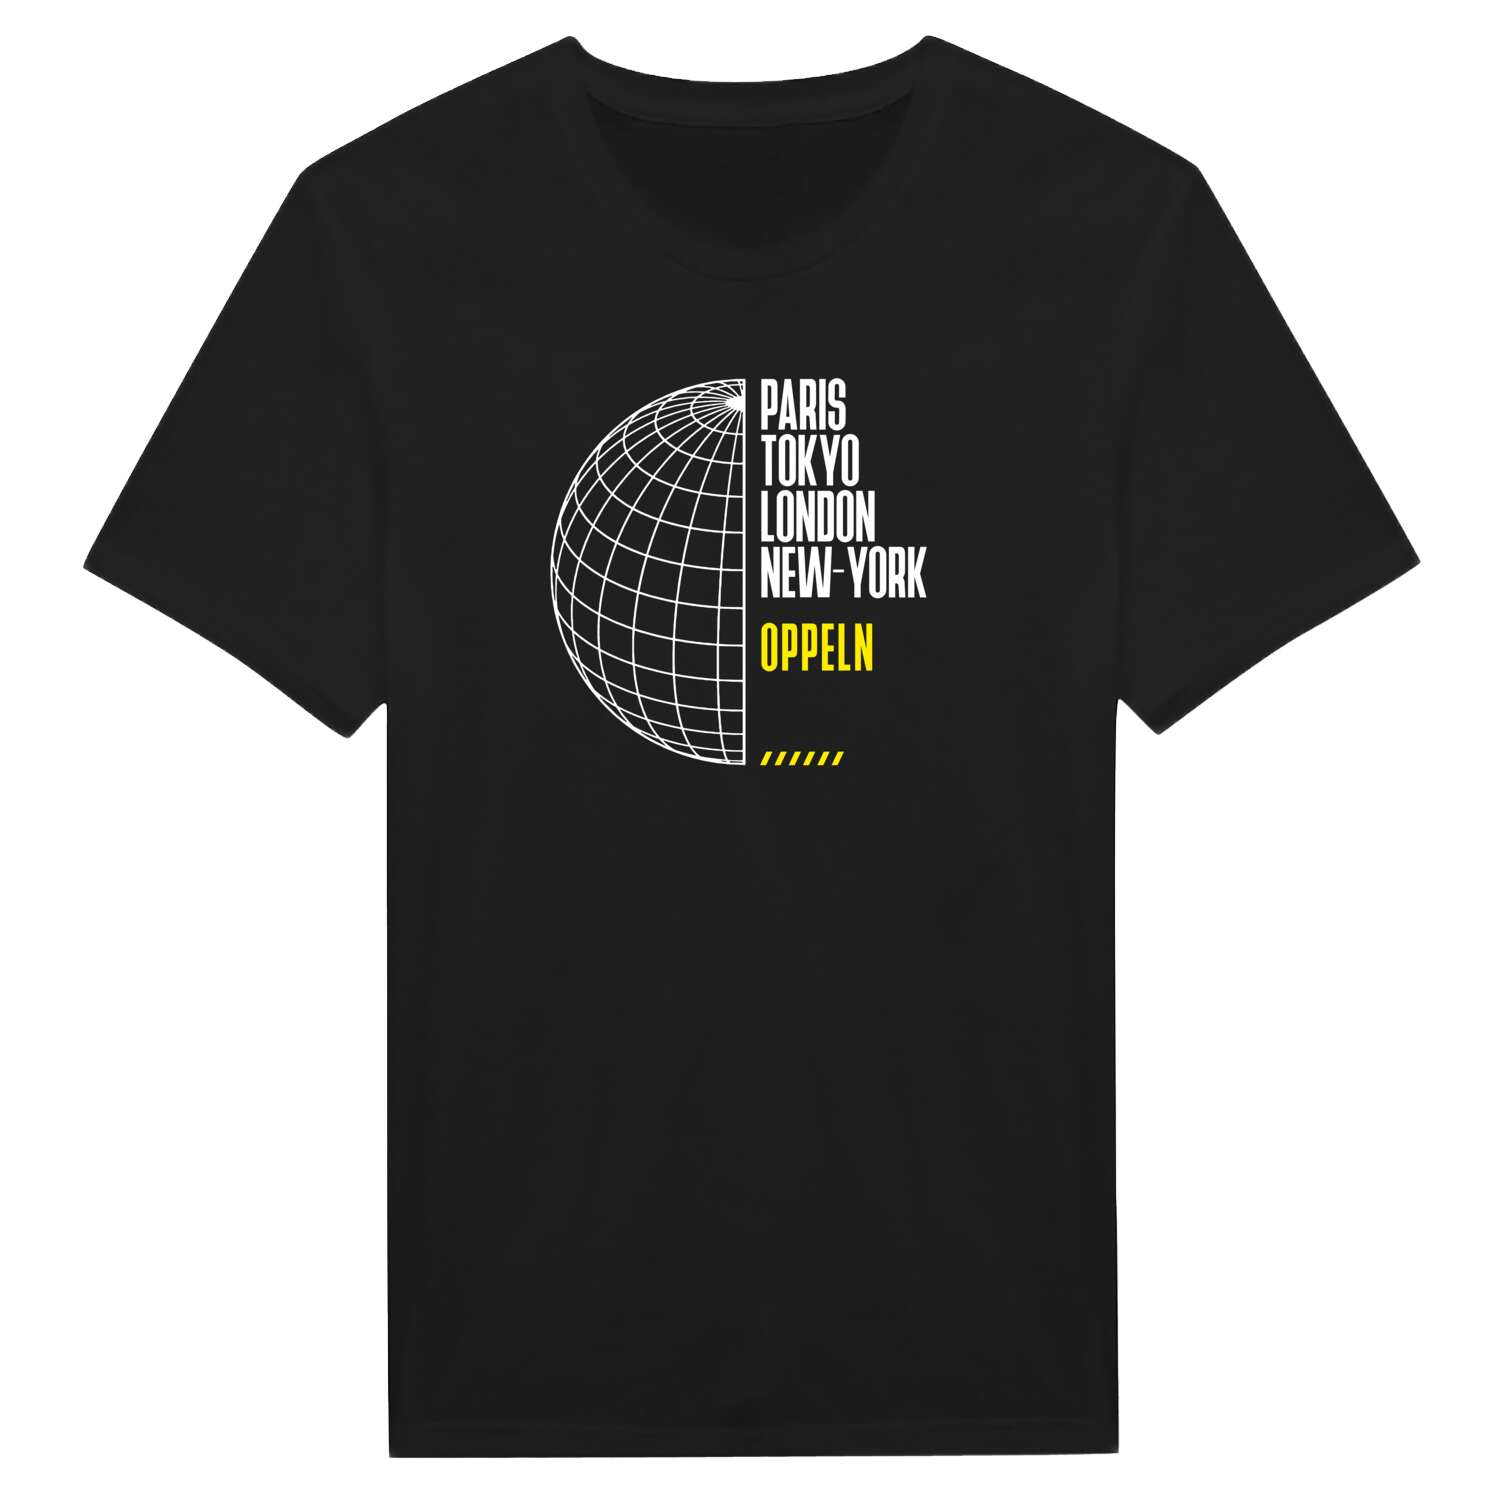 Oppeln T-Shirt »Paris Tokyo London«